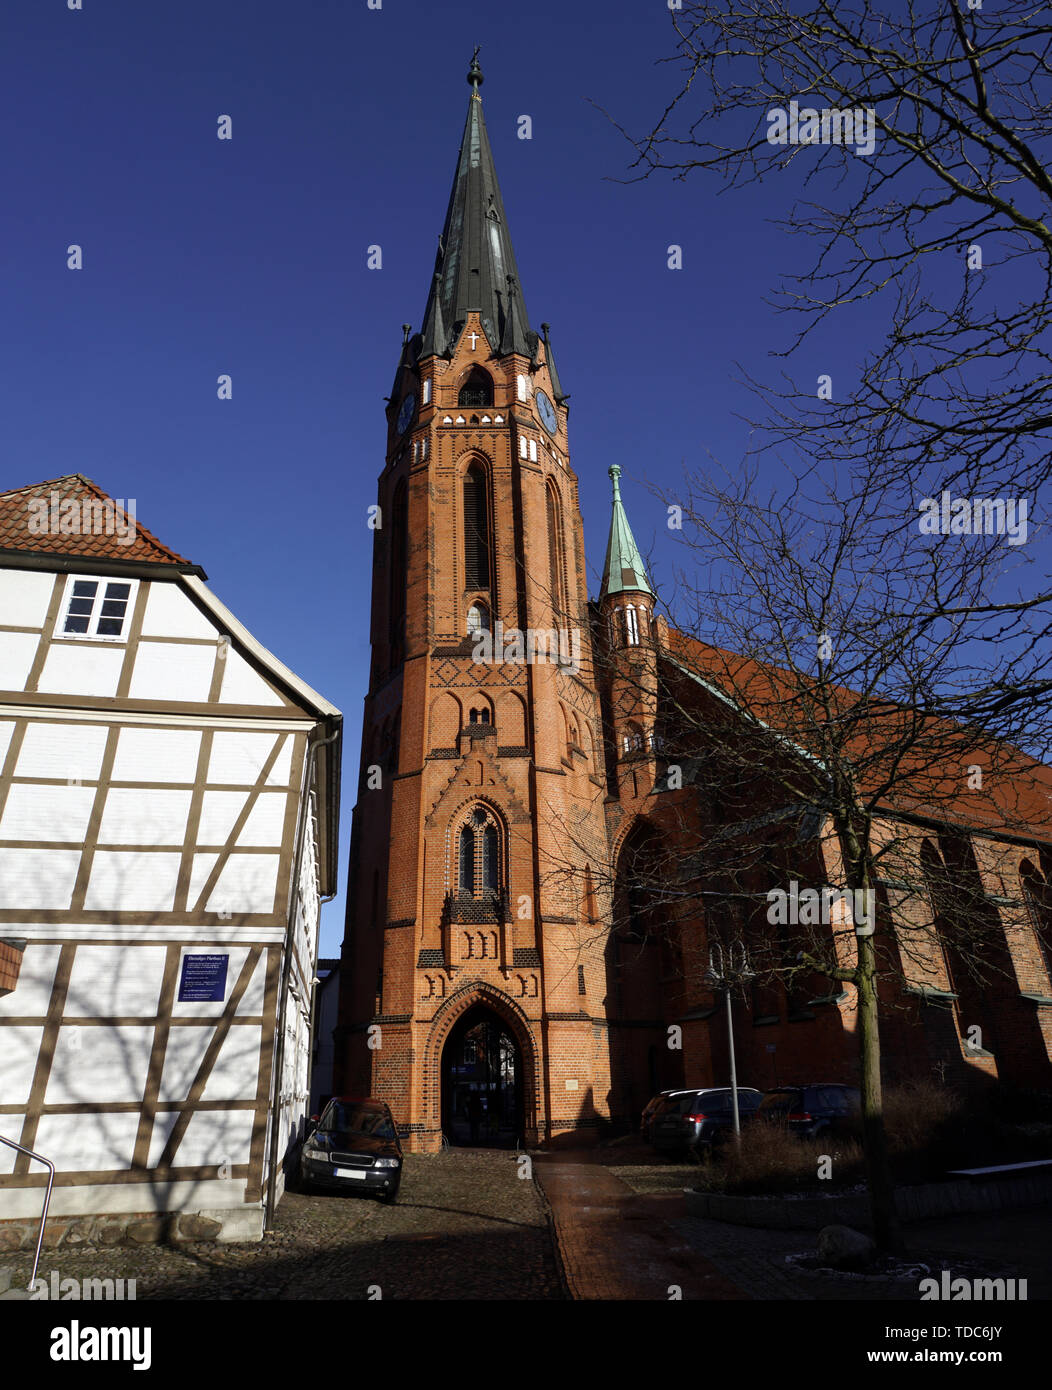 St. Marien-Kirche mit neugotischem Kirchturm, Winsen (Luhe), Niedersachsen, Deutschland Stock Photo